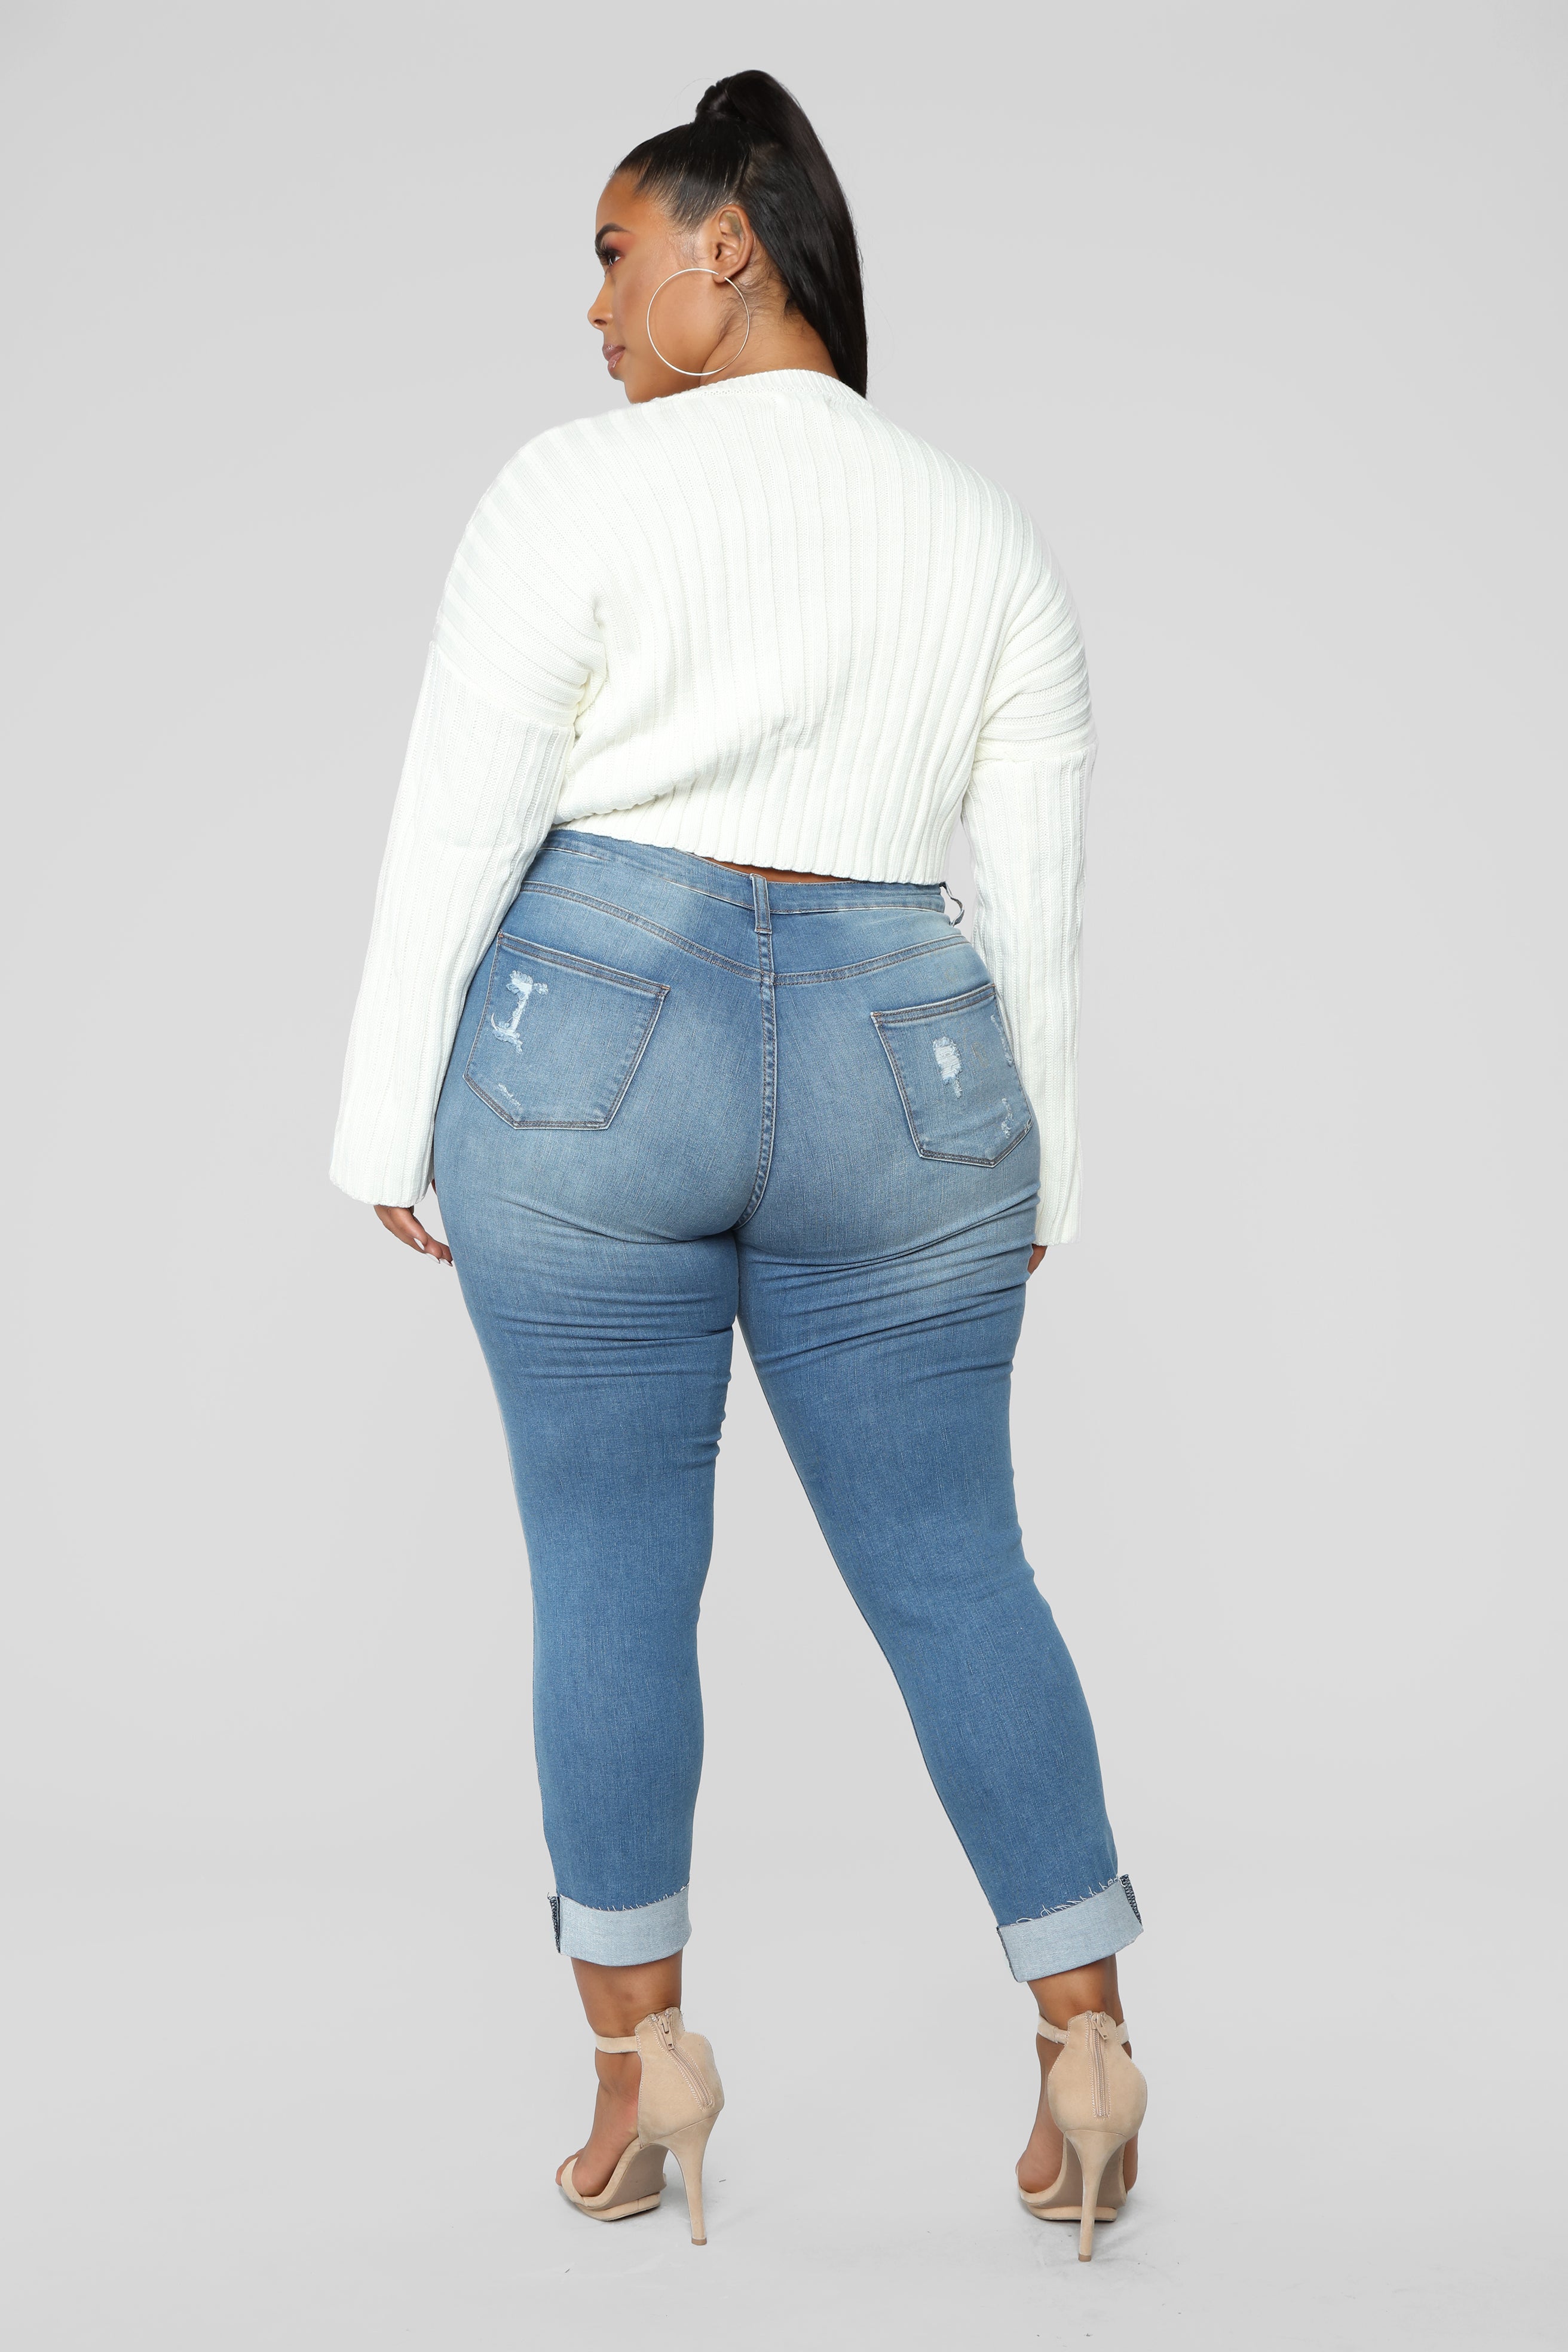 Cuff Crush Jeans - Medium Blue